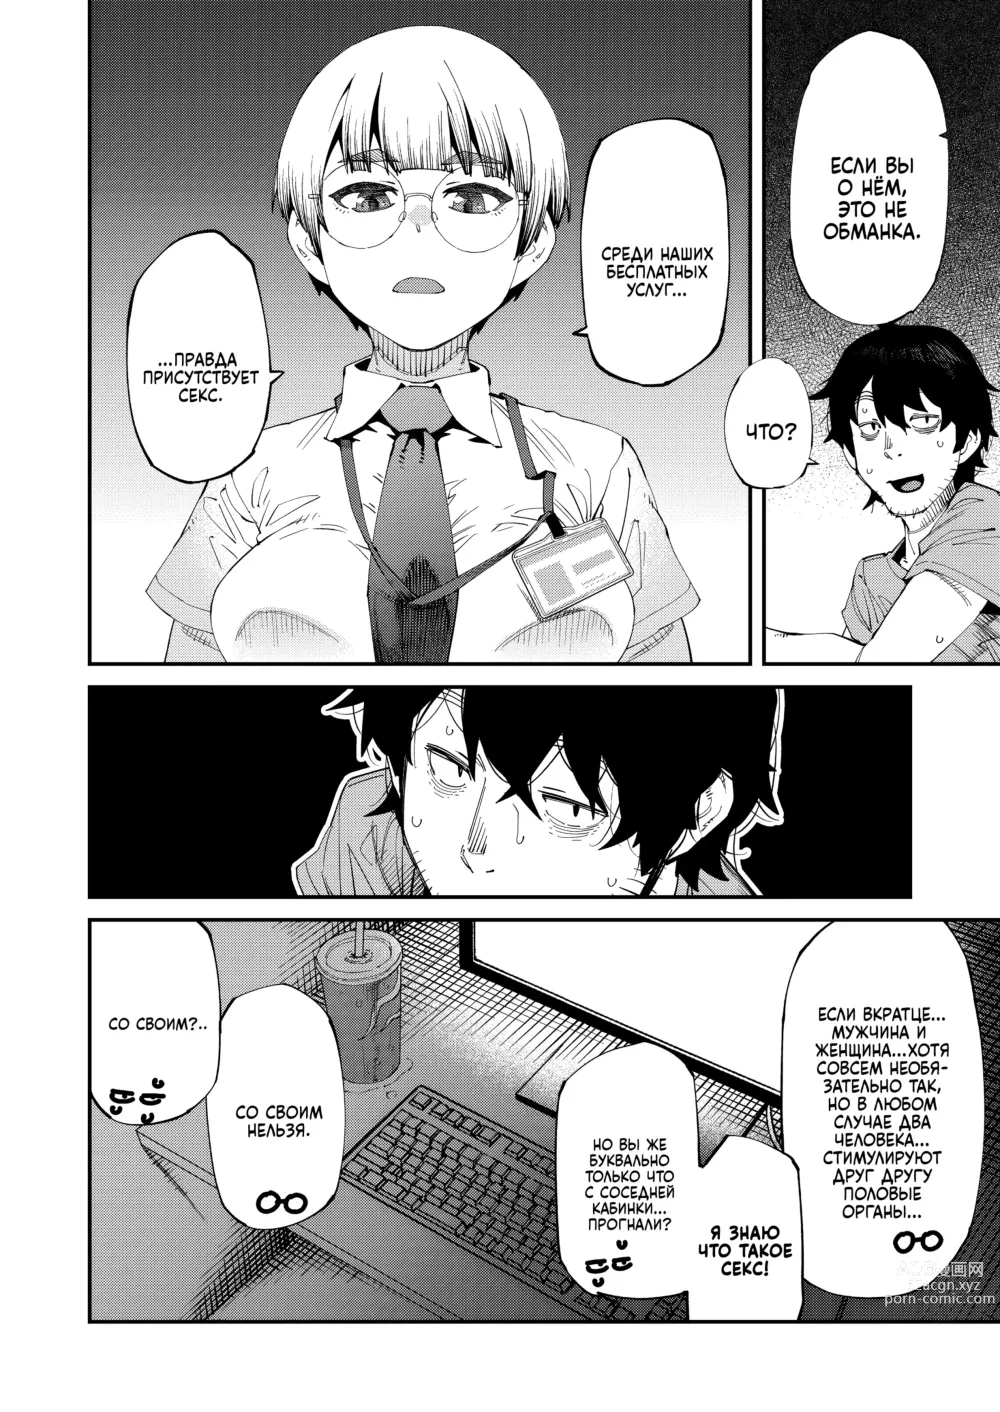 Page 4 of manga Интернет-кафе с тарифом 